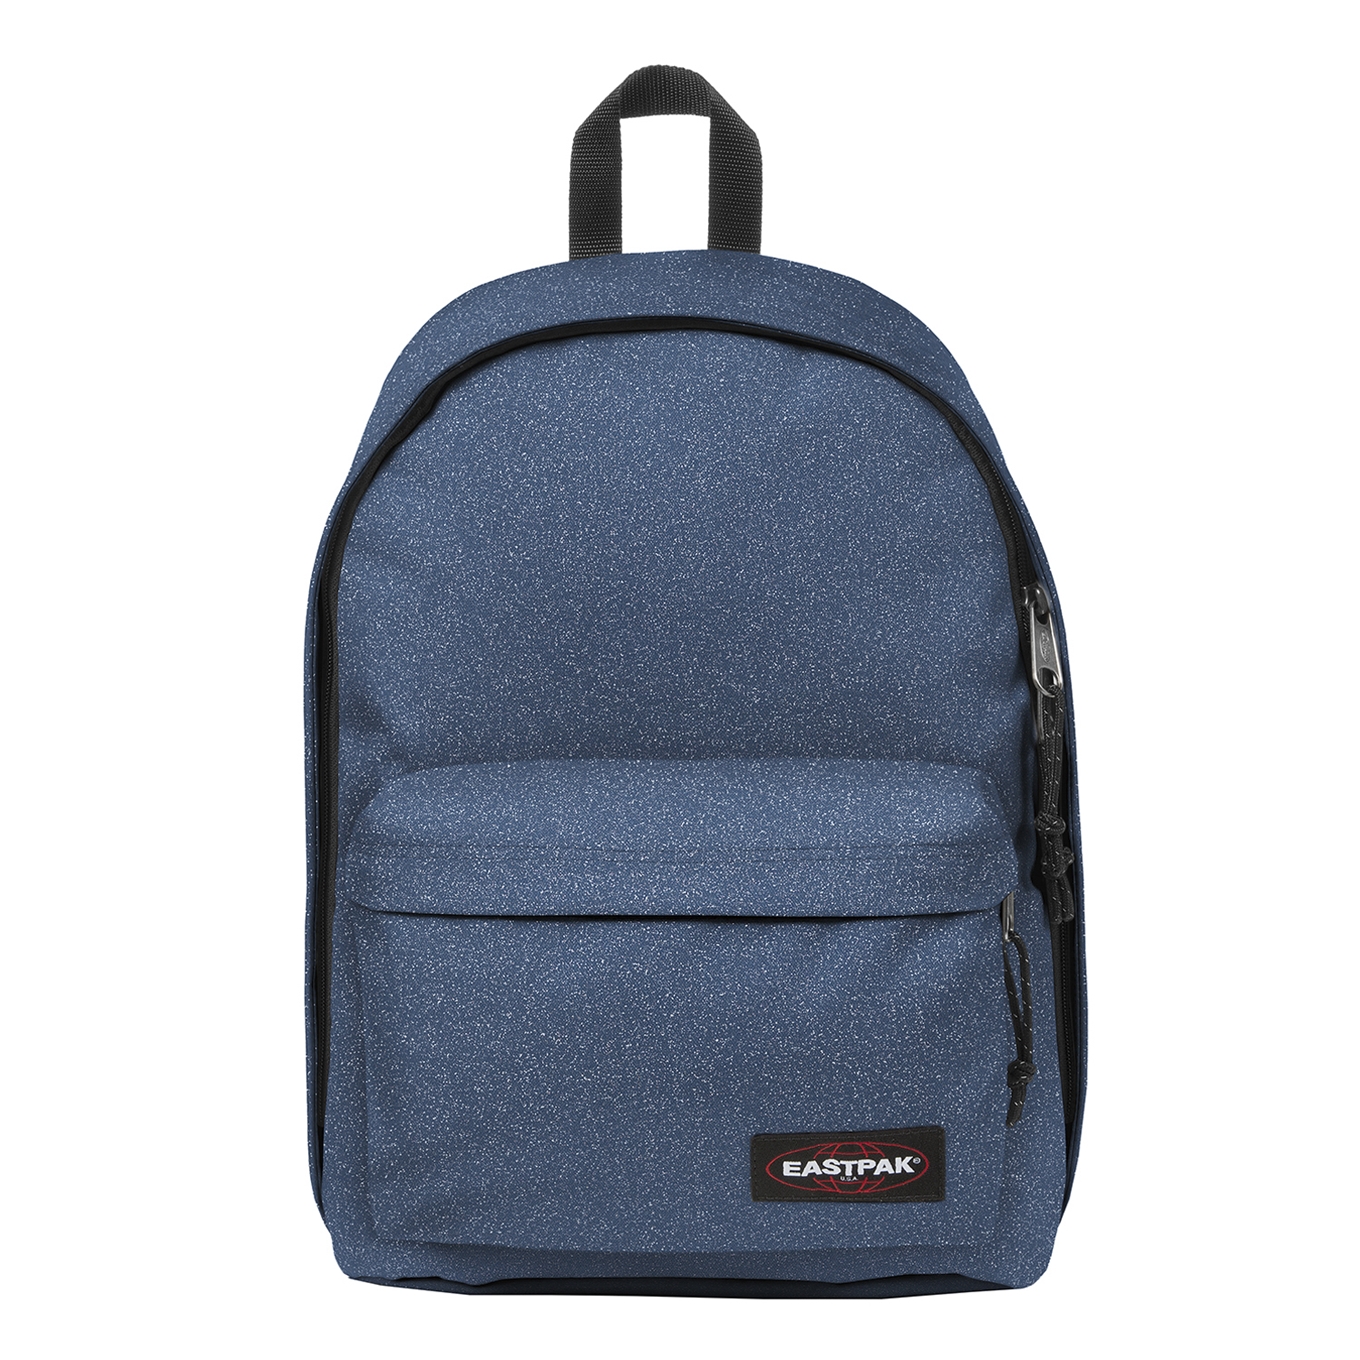 Eastpak Out Of Office Rugzak spark blue backpack